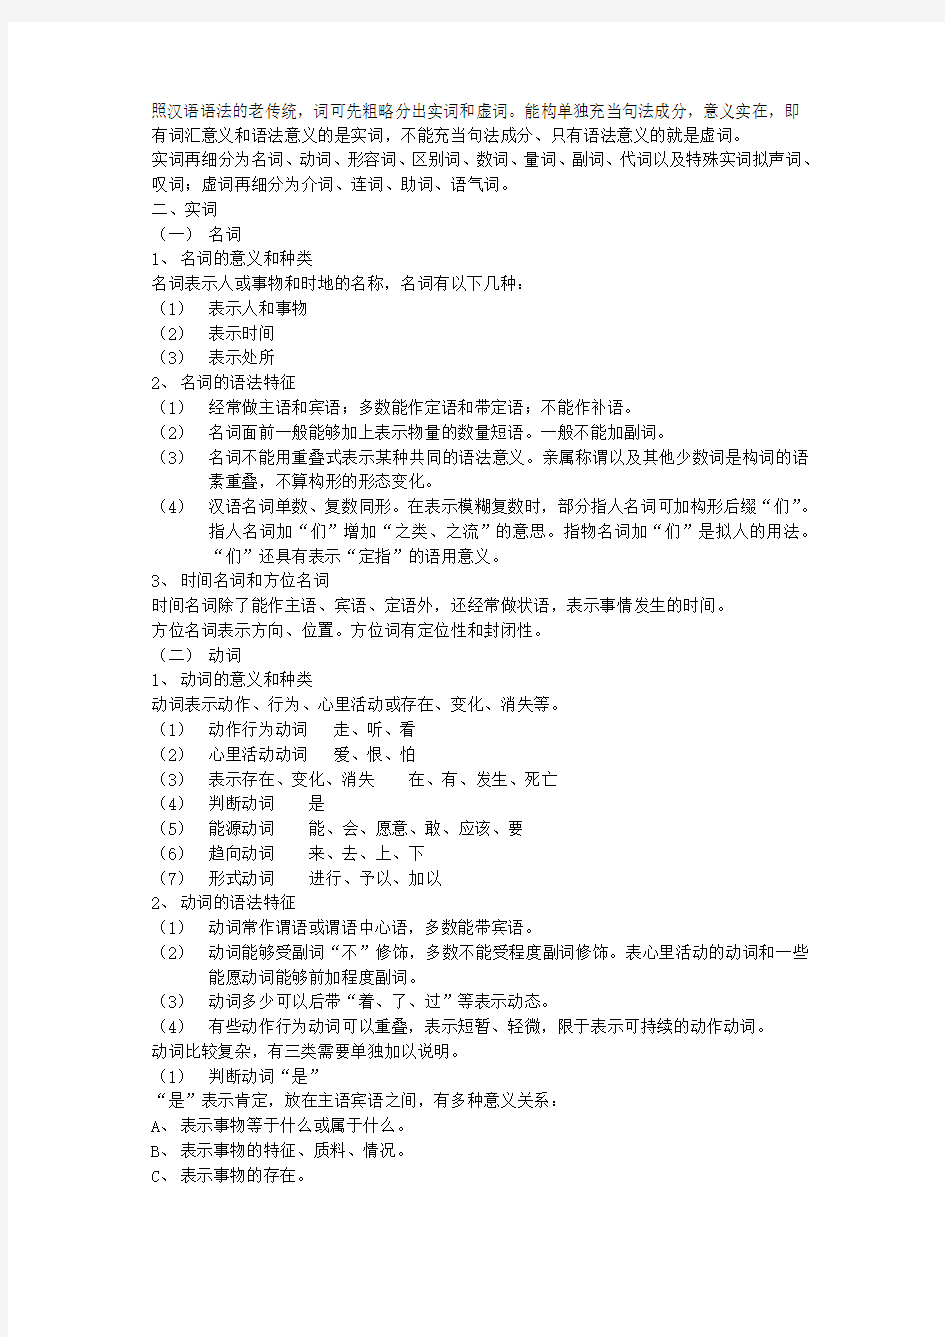 现代汉语笔记(2)